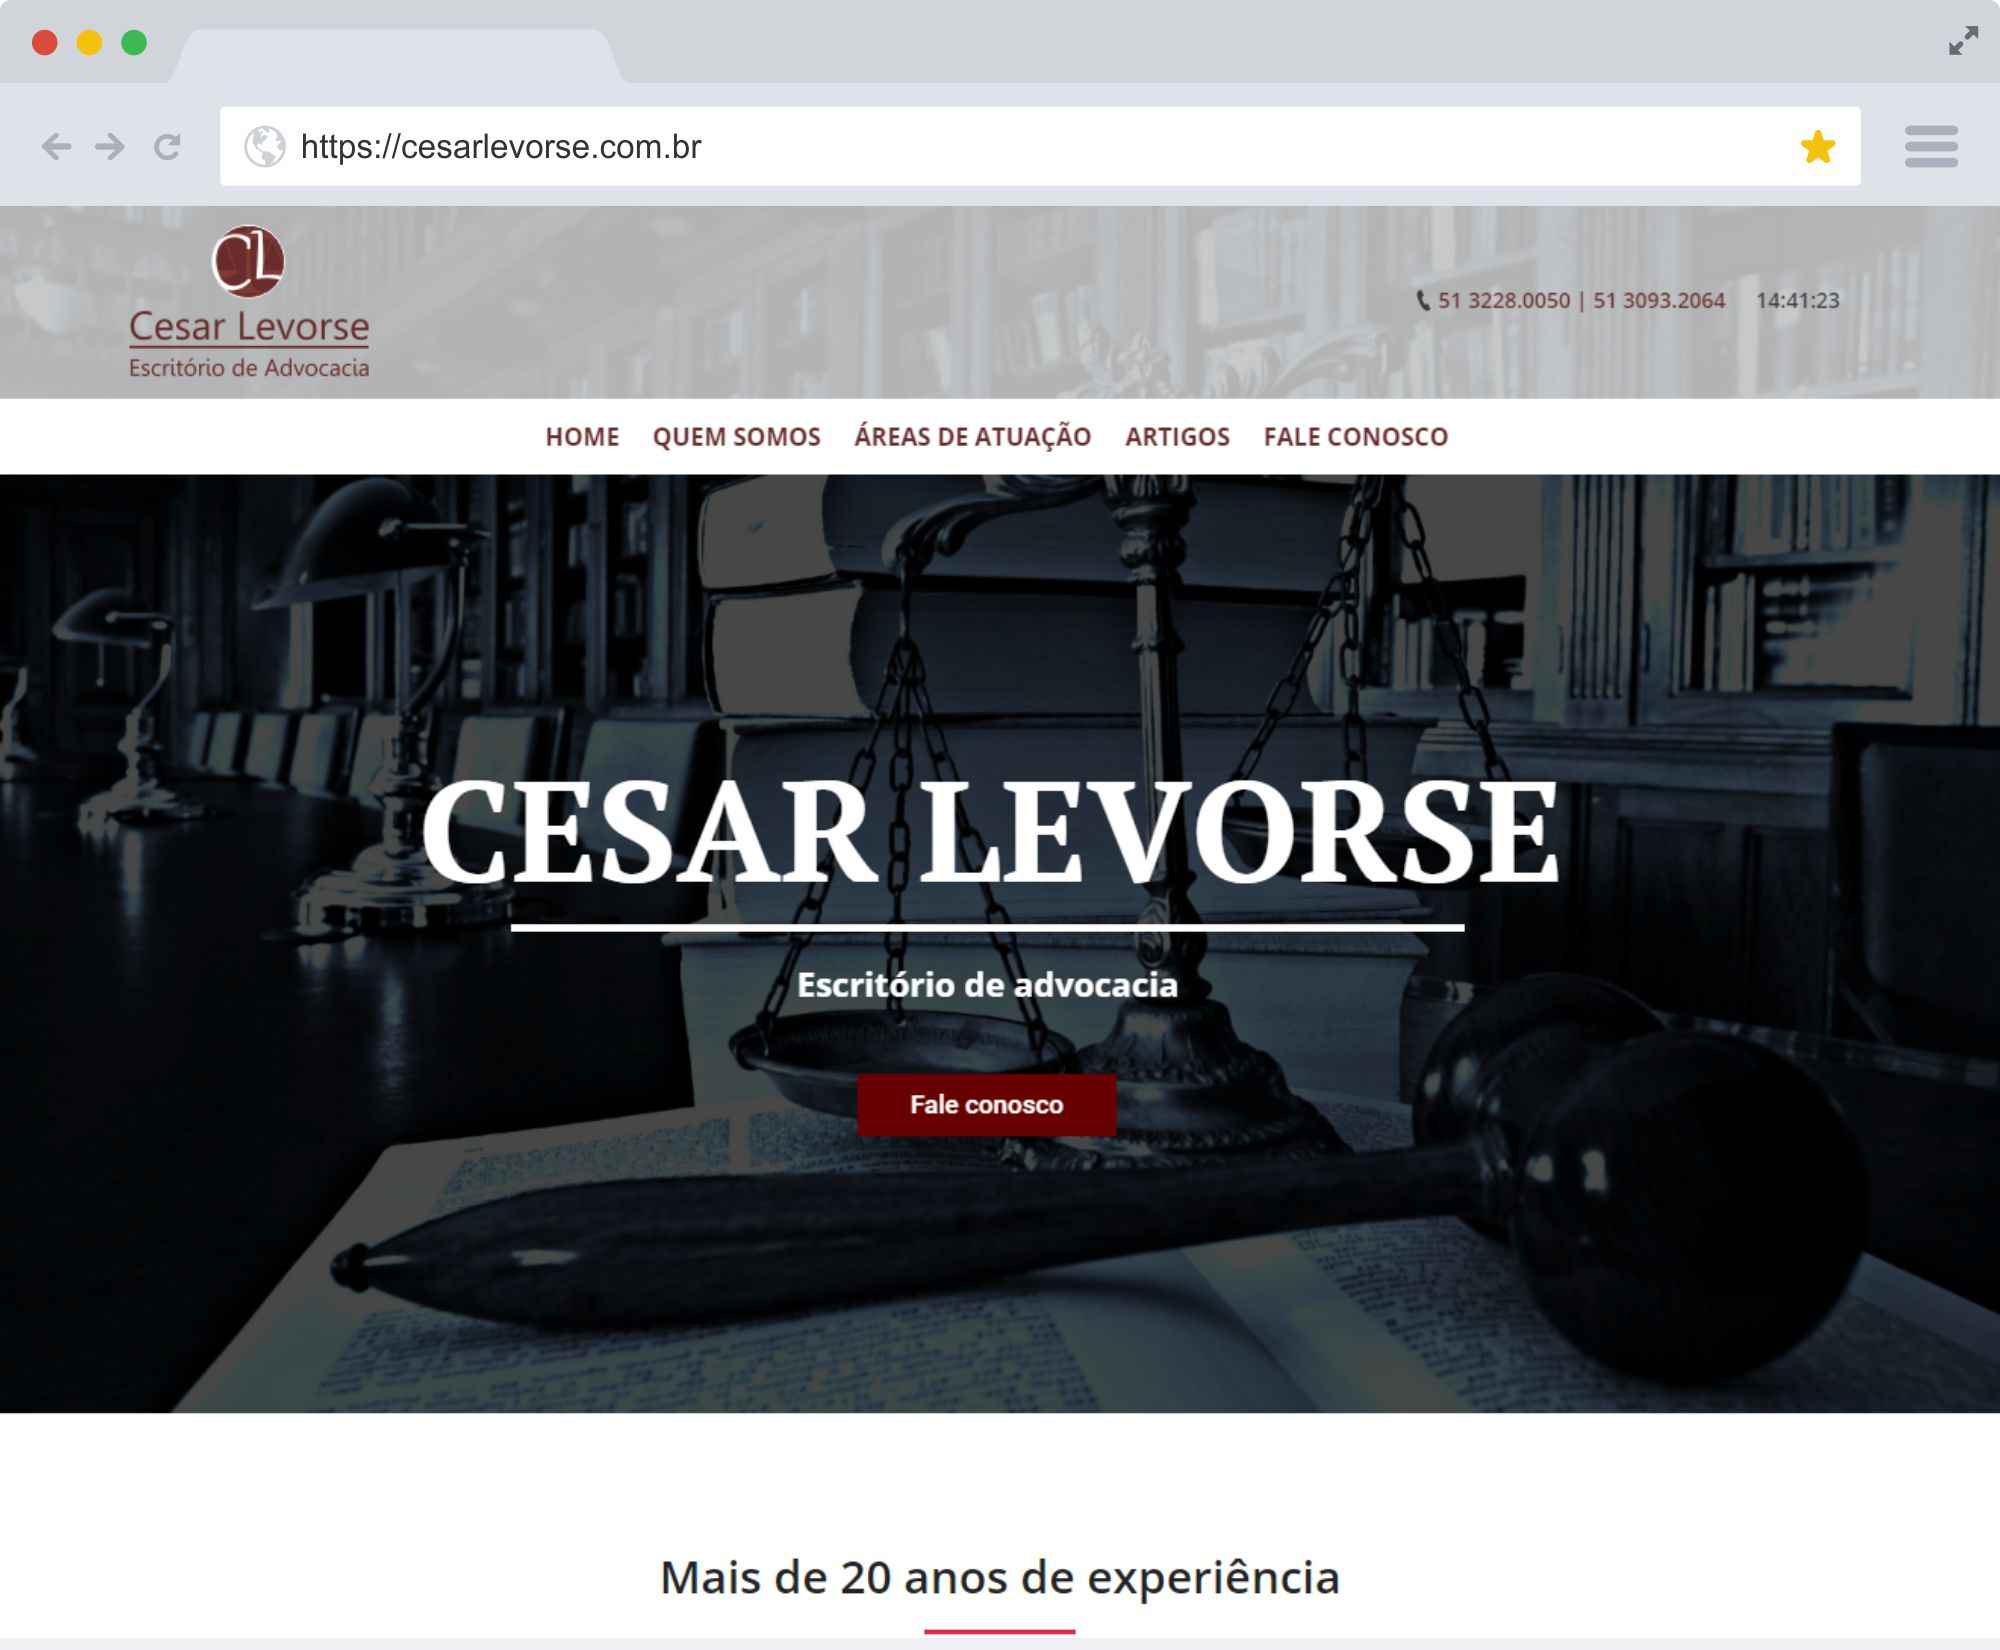 cesarlevorse.com.br